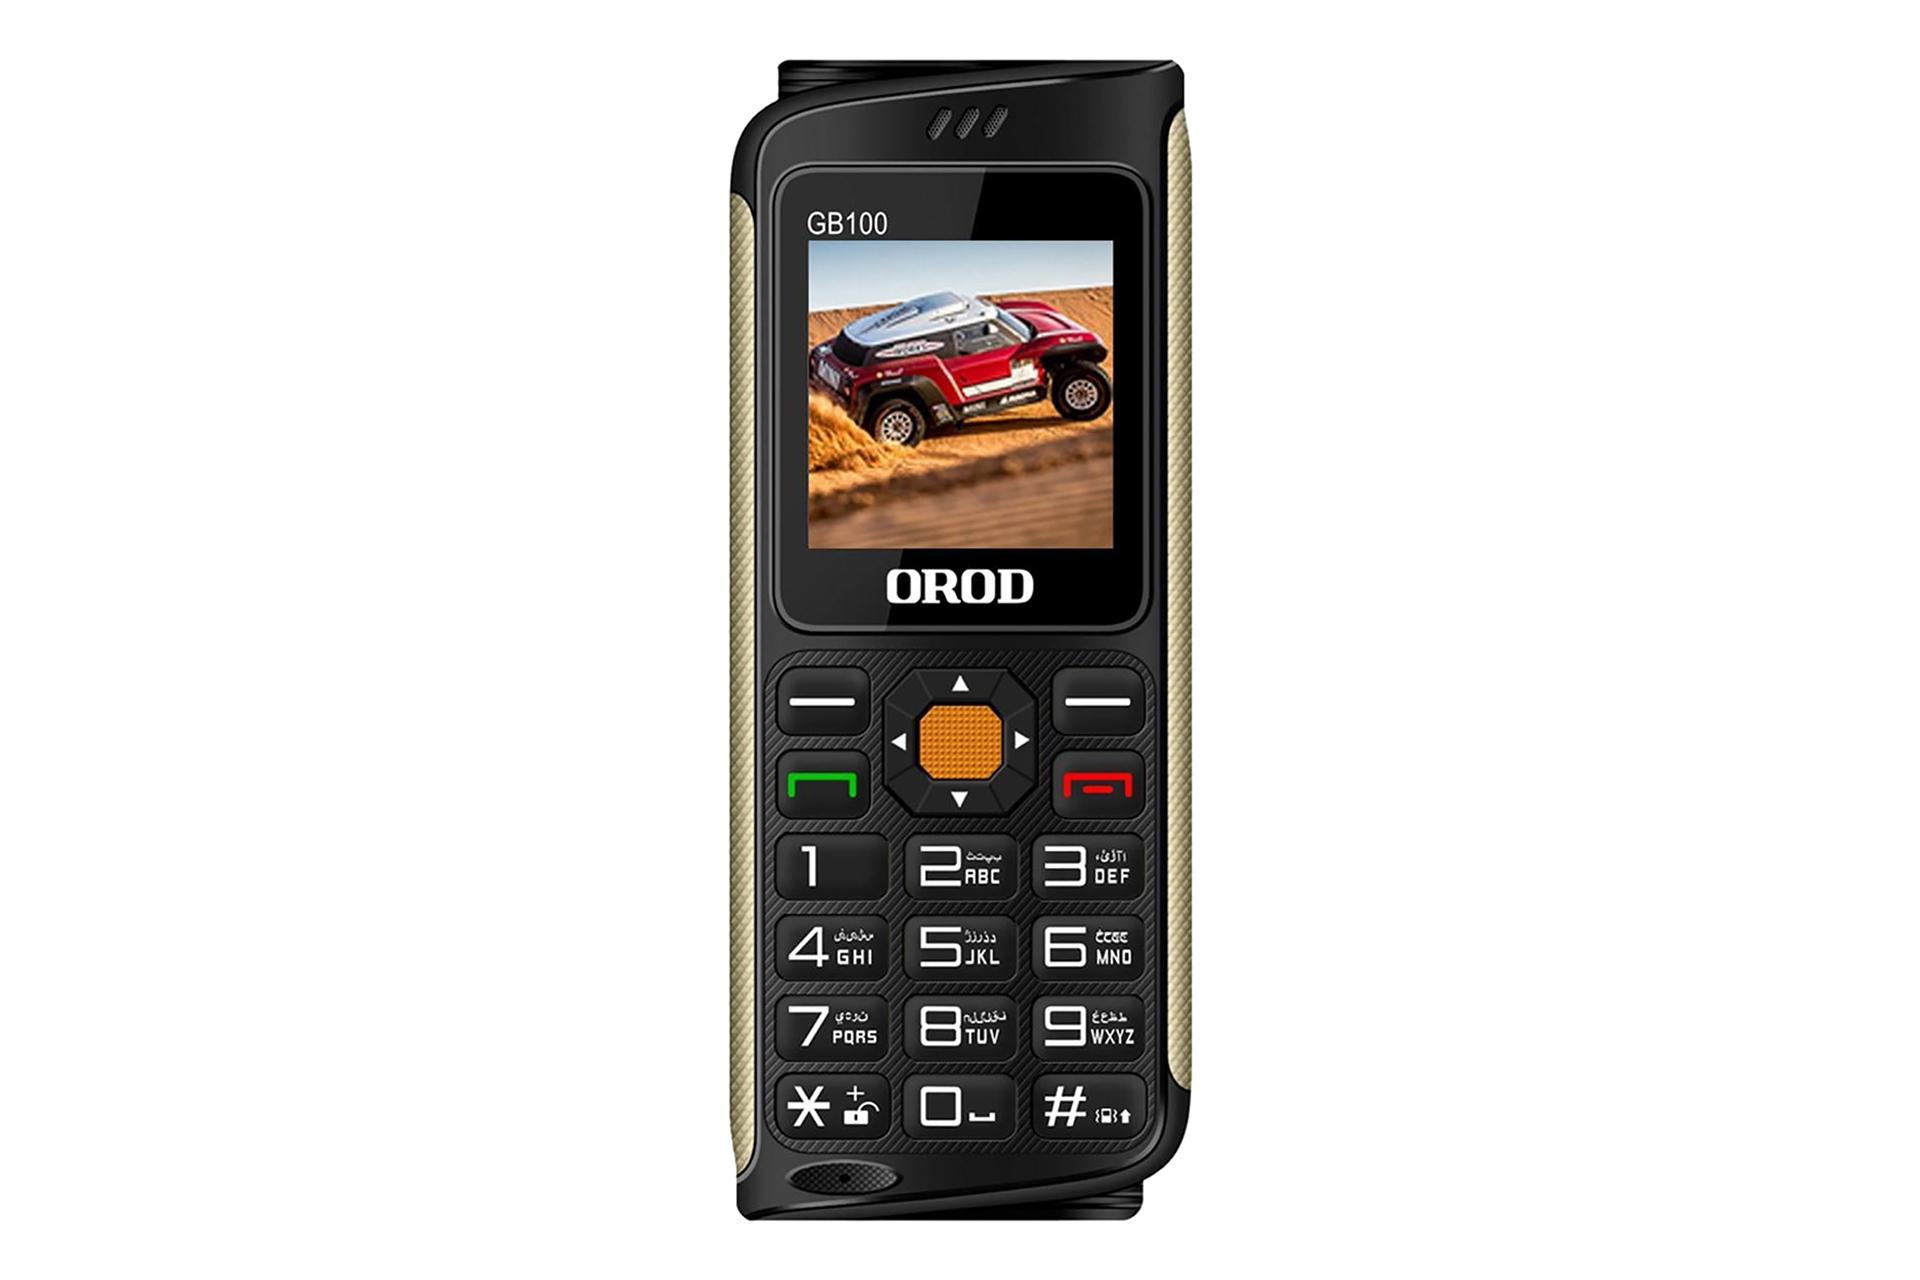 گوشی موبایل جی بی 100 ارد OROD GB100 مشکی